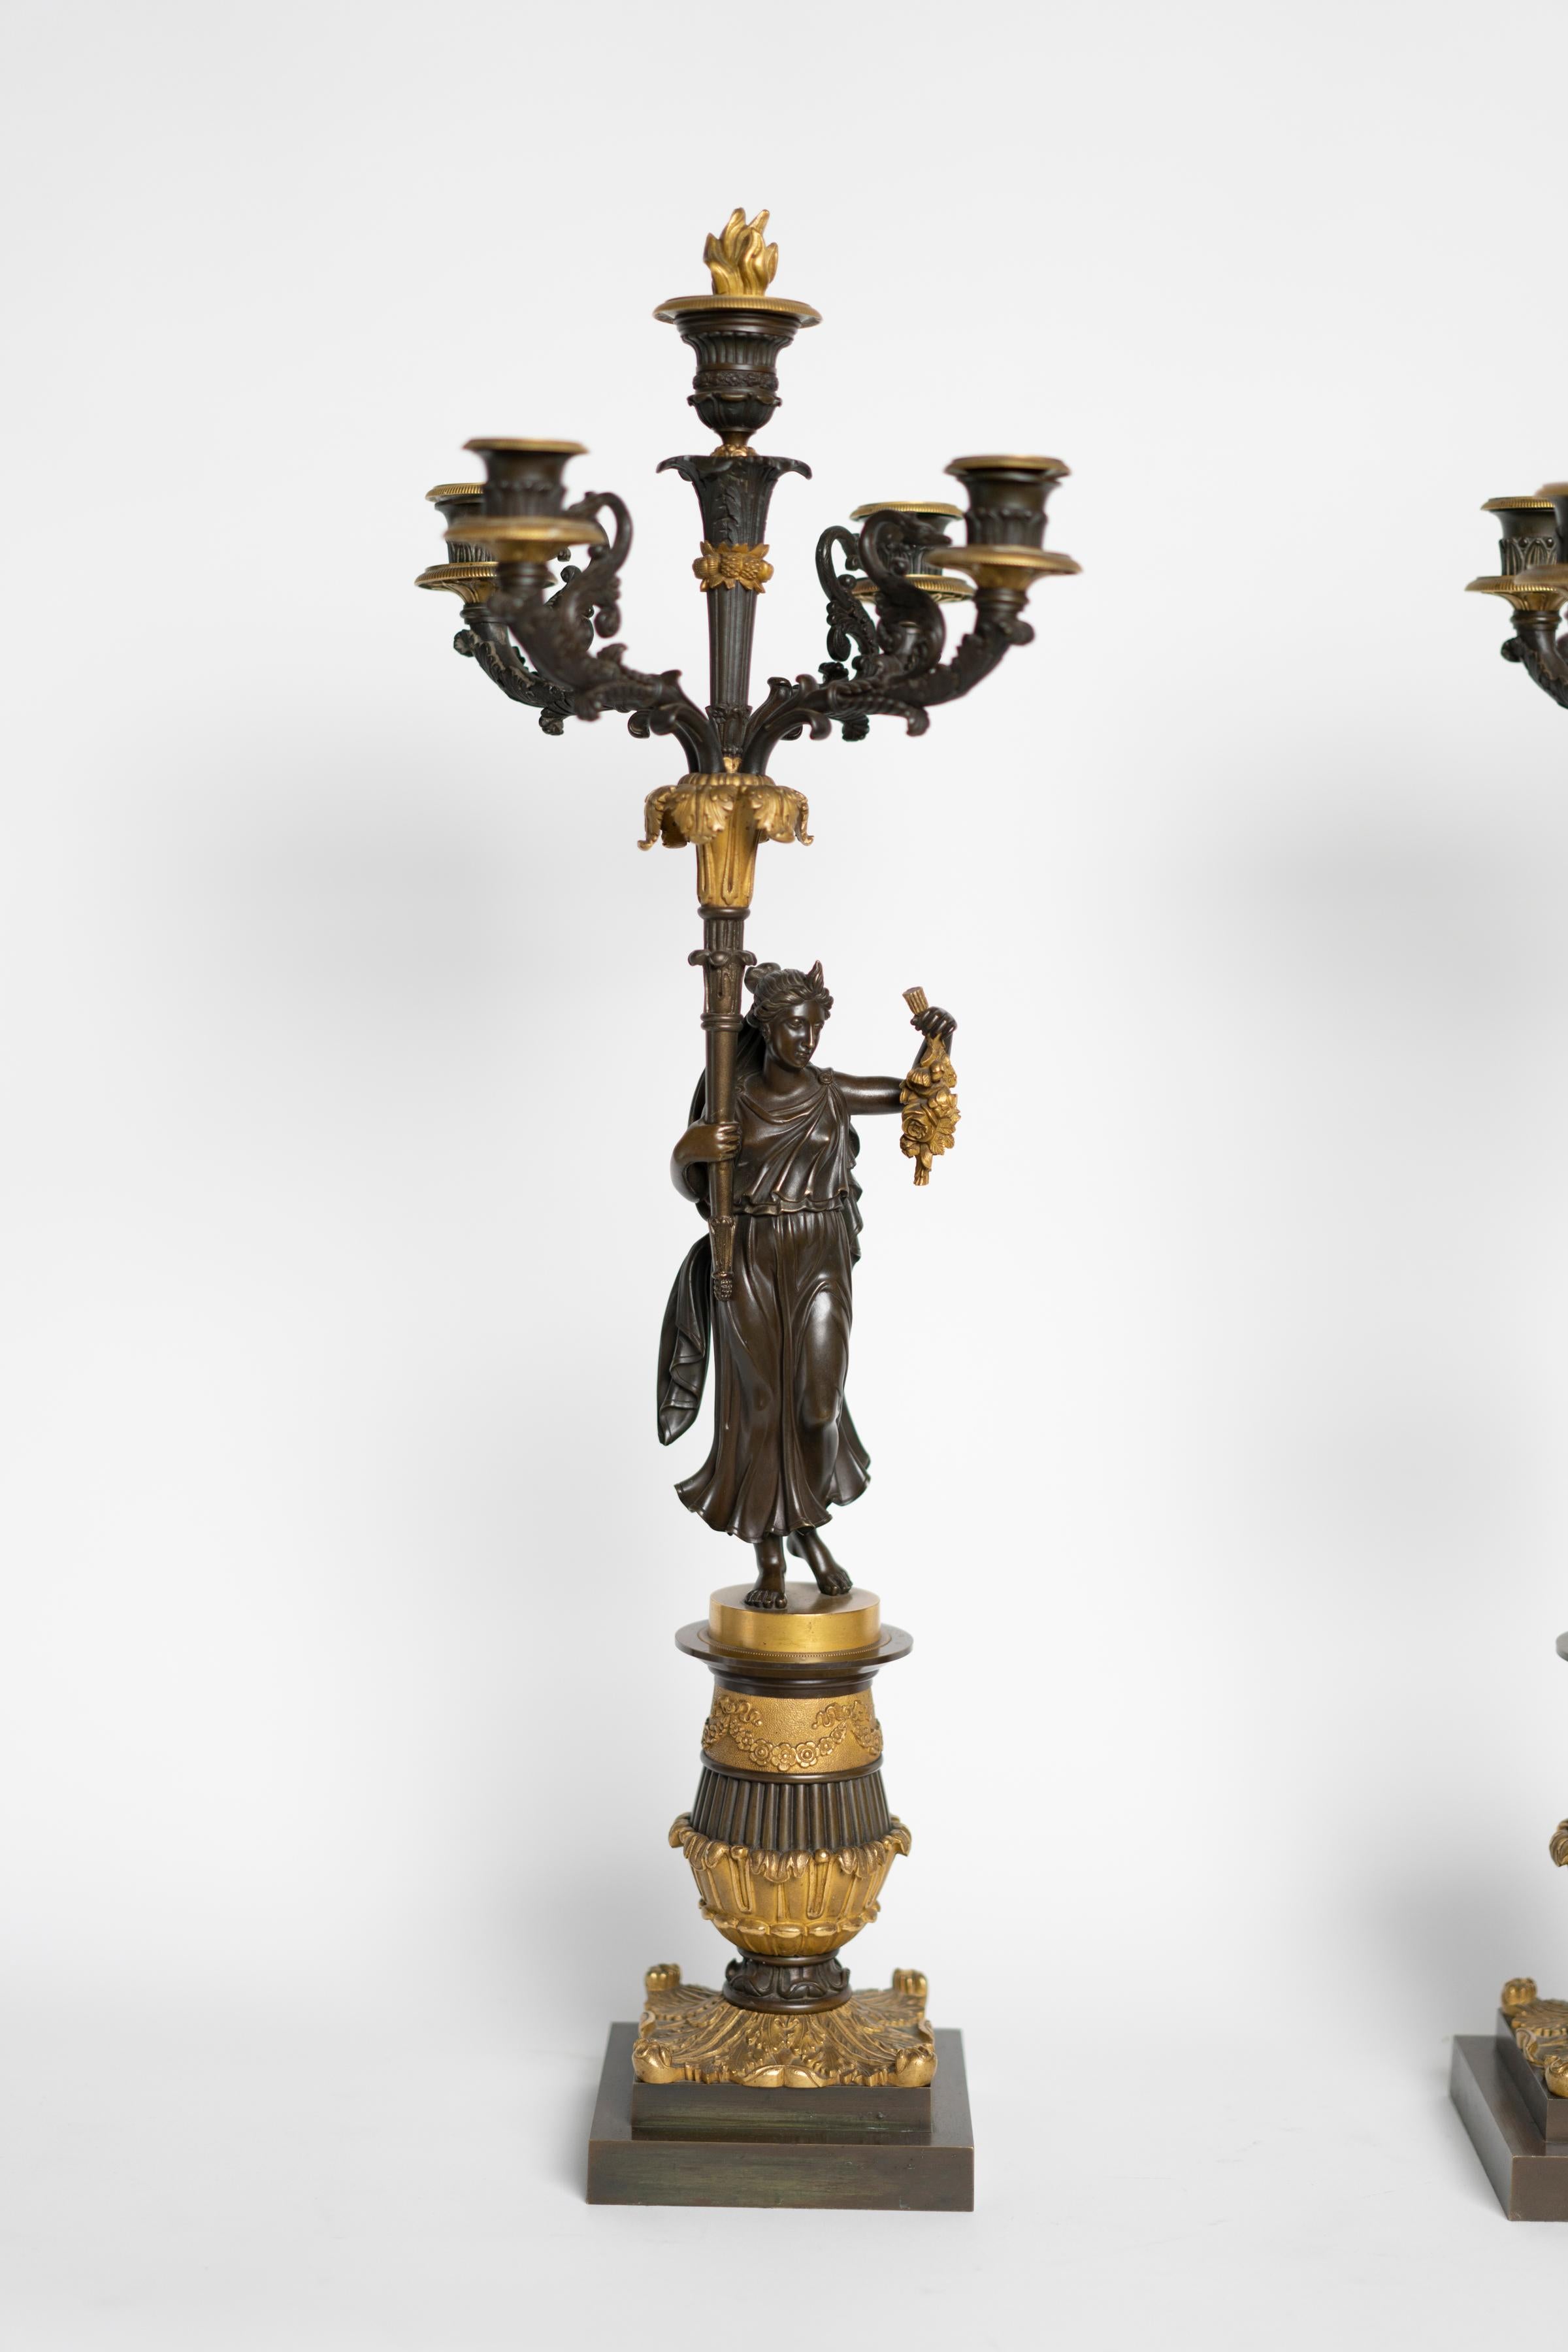 Paire de candélabres d'époque Charles X en bronze doré et patiné représentant un couple romain tenant des chandeliers à quatre lumières.